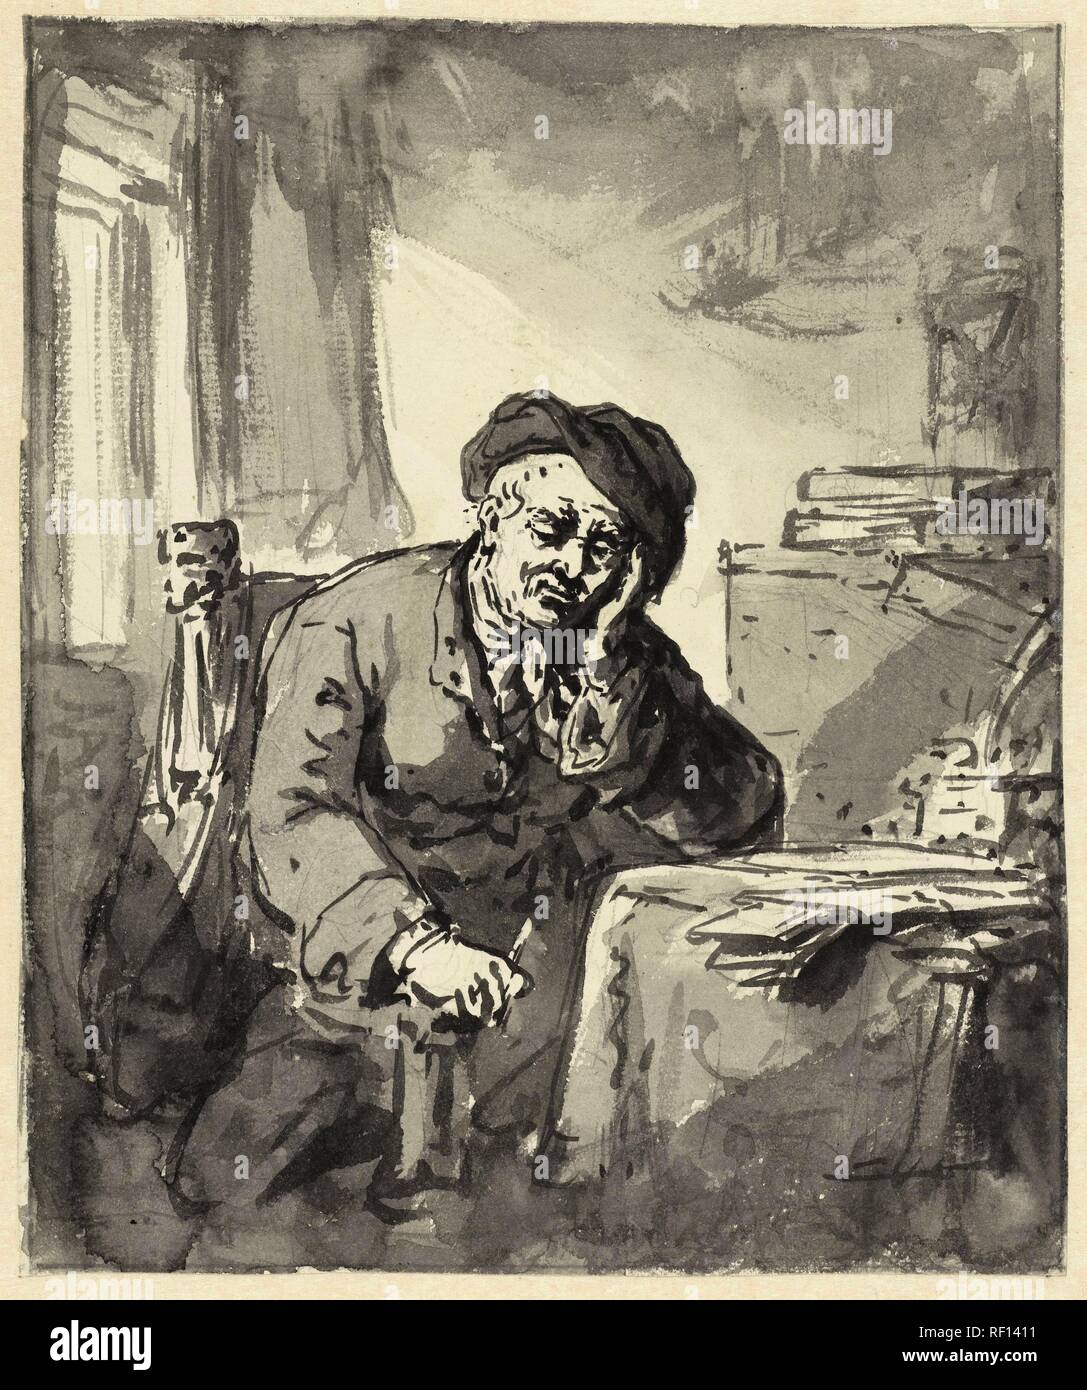 Mann am Tisch sitzen, seinen Kopf auf den linken Arm. Verfasser der Stellungnahme: Abraham van Strij (I). Datierung: 1763 - 1826. Maße: H 206 mm x B 173 mm. Museum: Rijksmuseum, Amsterdam. Stockfoto